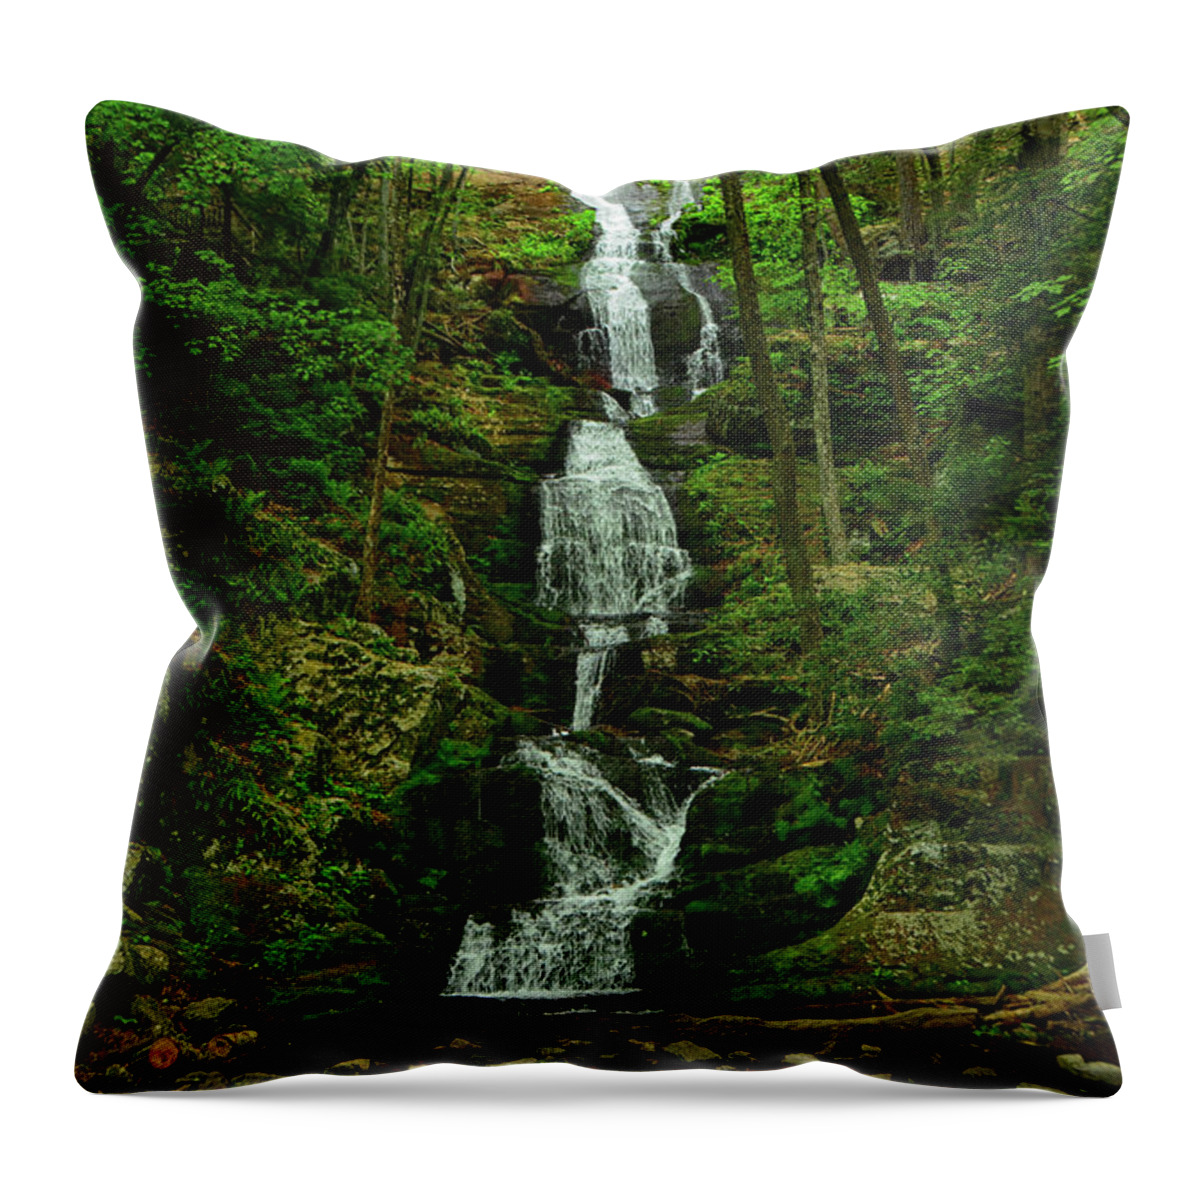 Buttermilk Falls Throw Pillow featuring the photograph Buttermilk Falls 4 by Raymond Salani III